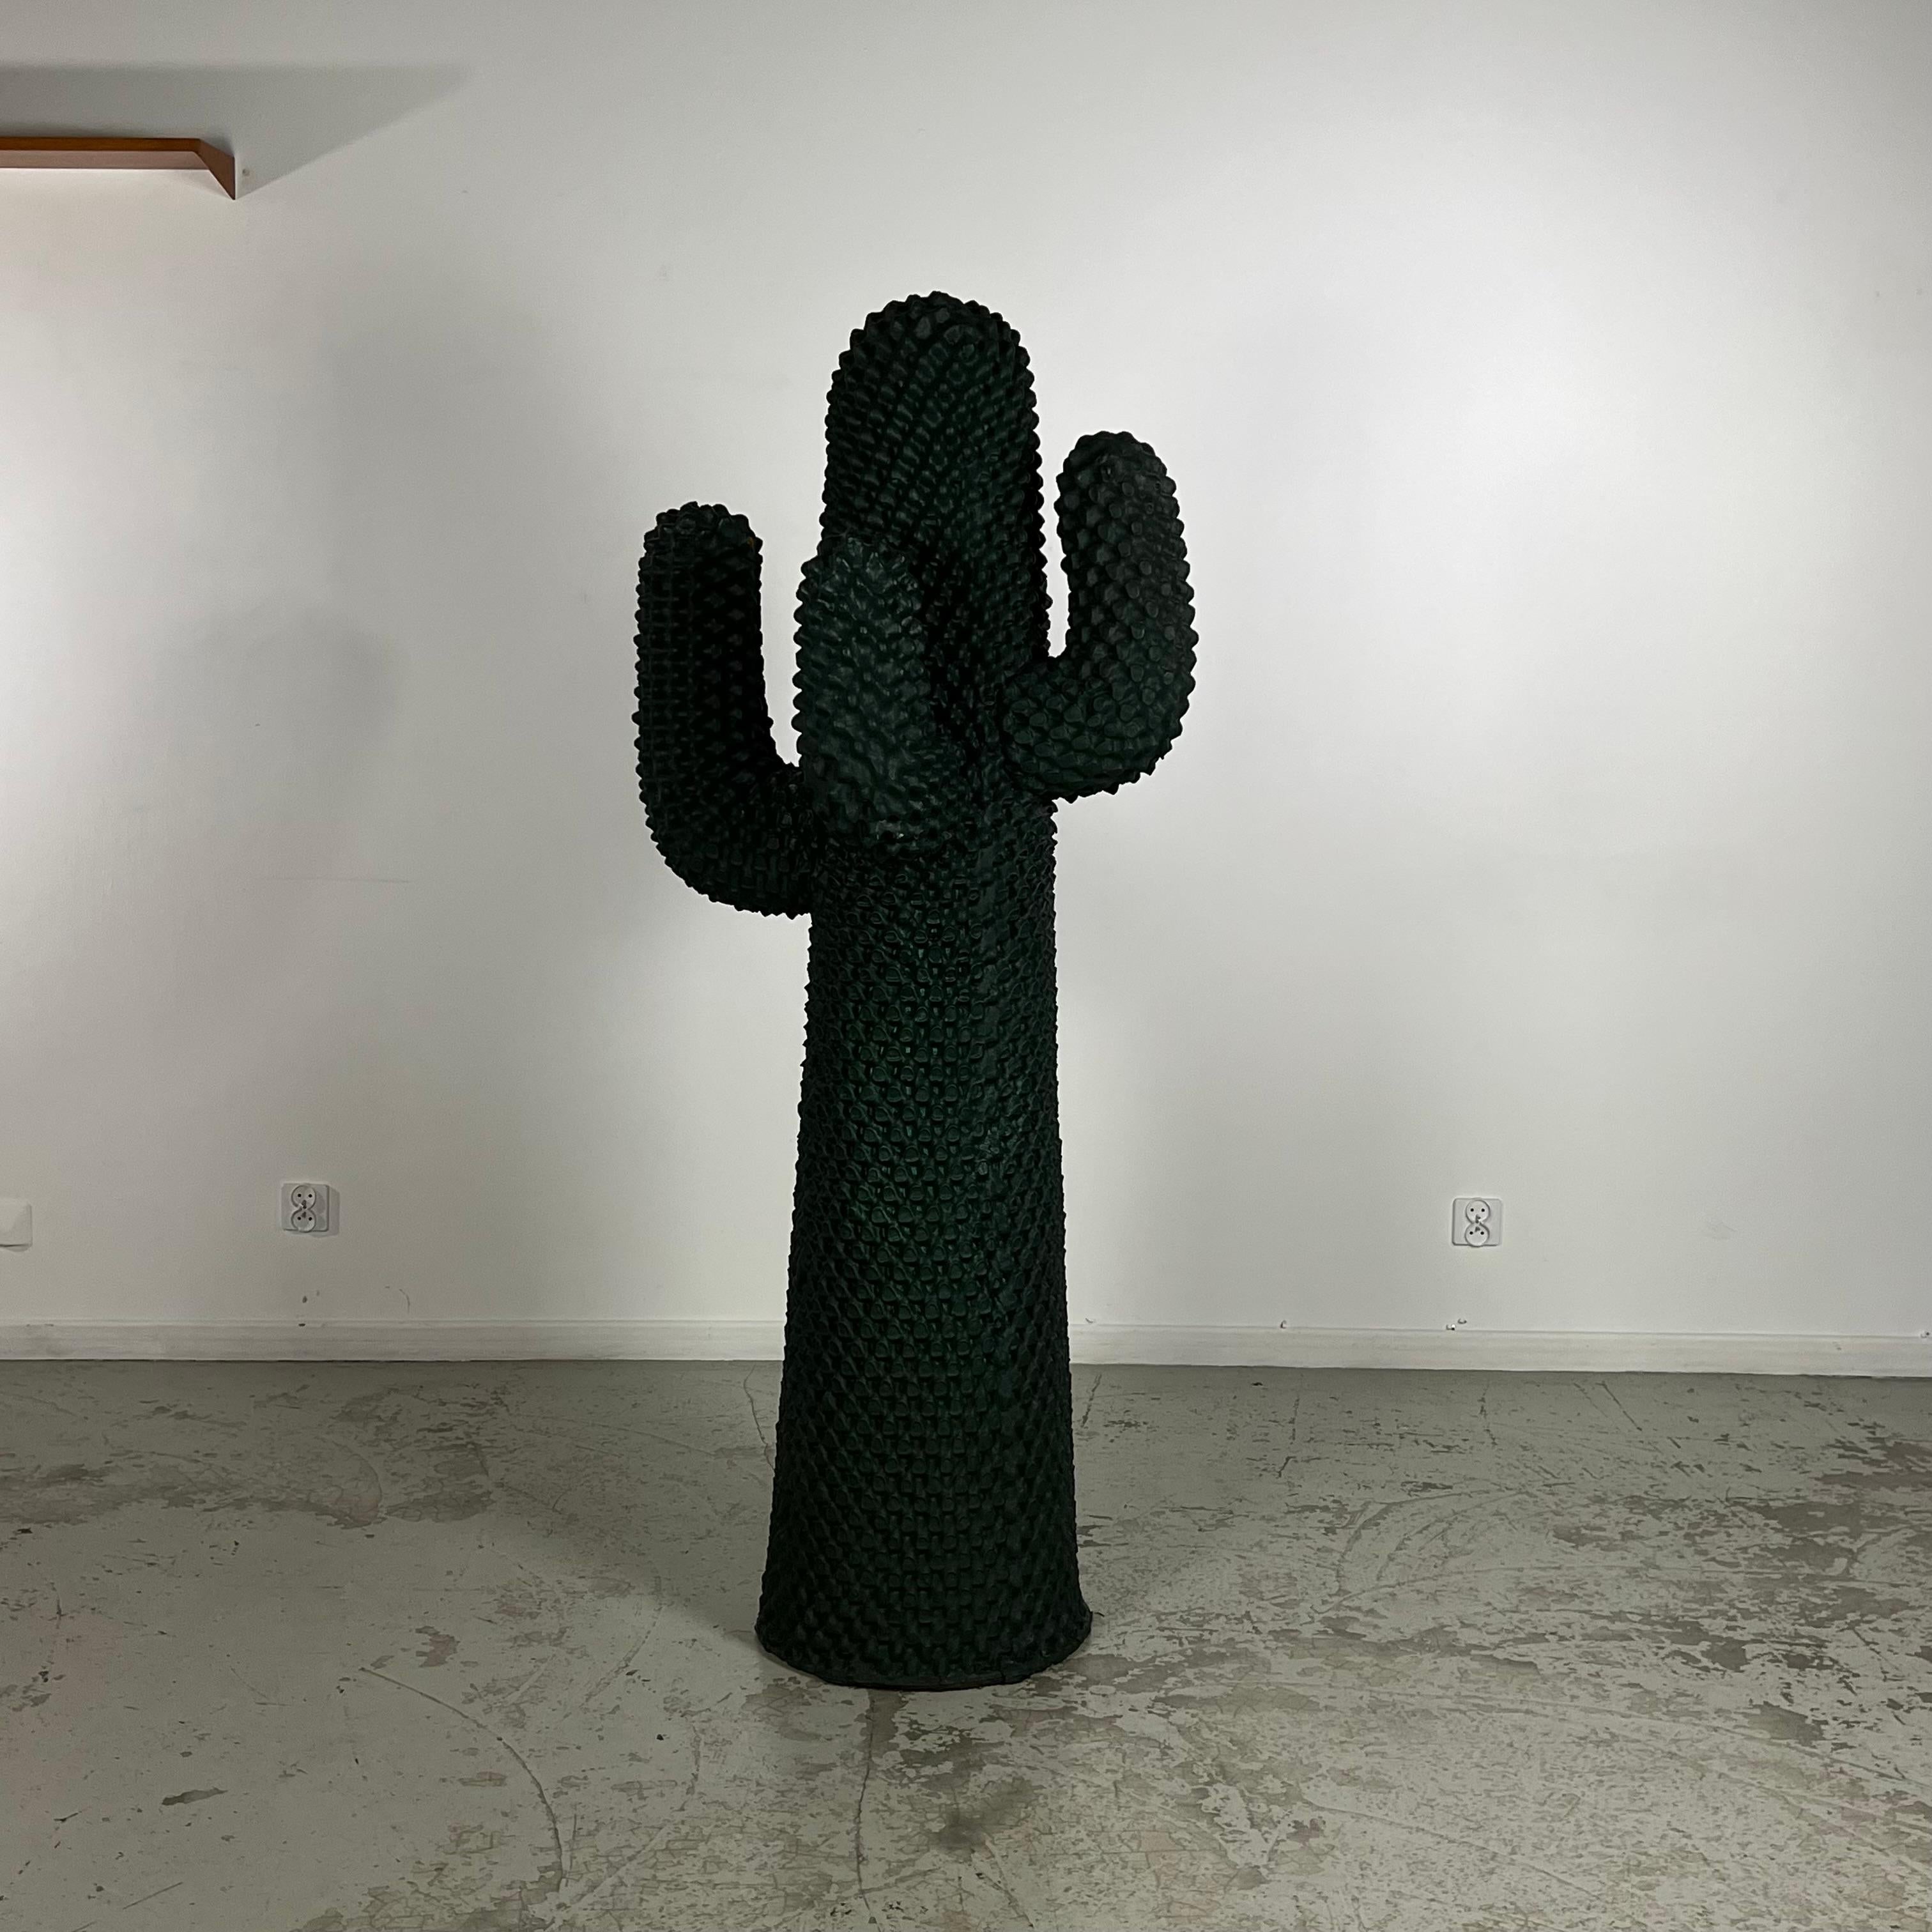 Le manteau Cactus anger a été conçu par Guido Drocco et Franco Mello pour Gufram, un fabricant italien, au début des années 70. Sa conception s'inscrit dans le cadre de l'initiative 